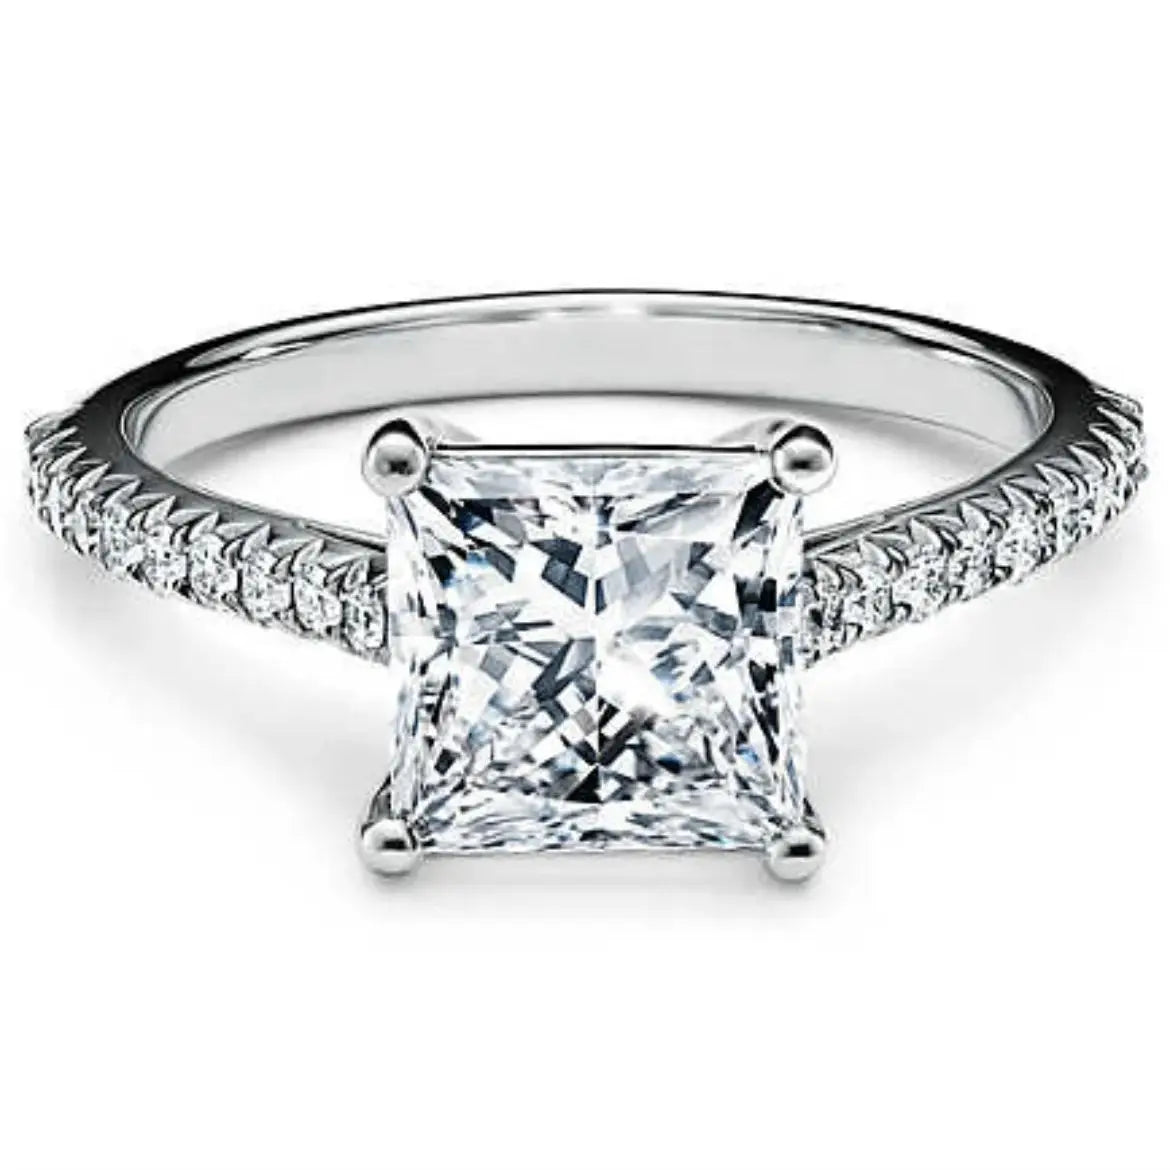 Luxury Diamond Engagement Rings - 1.0 To 3.0 Carat Lab-Grown Diamond